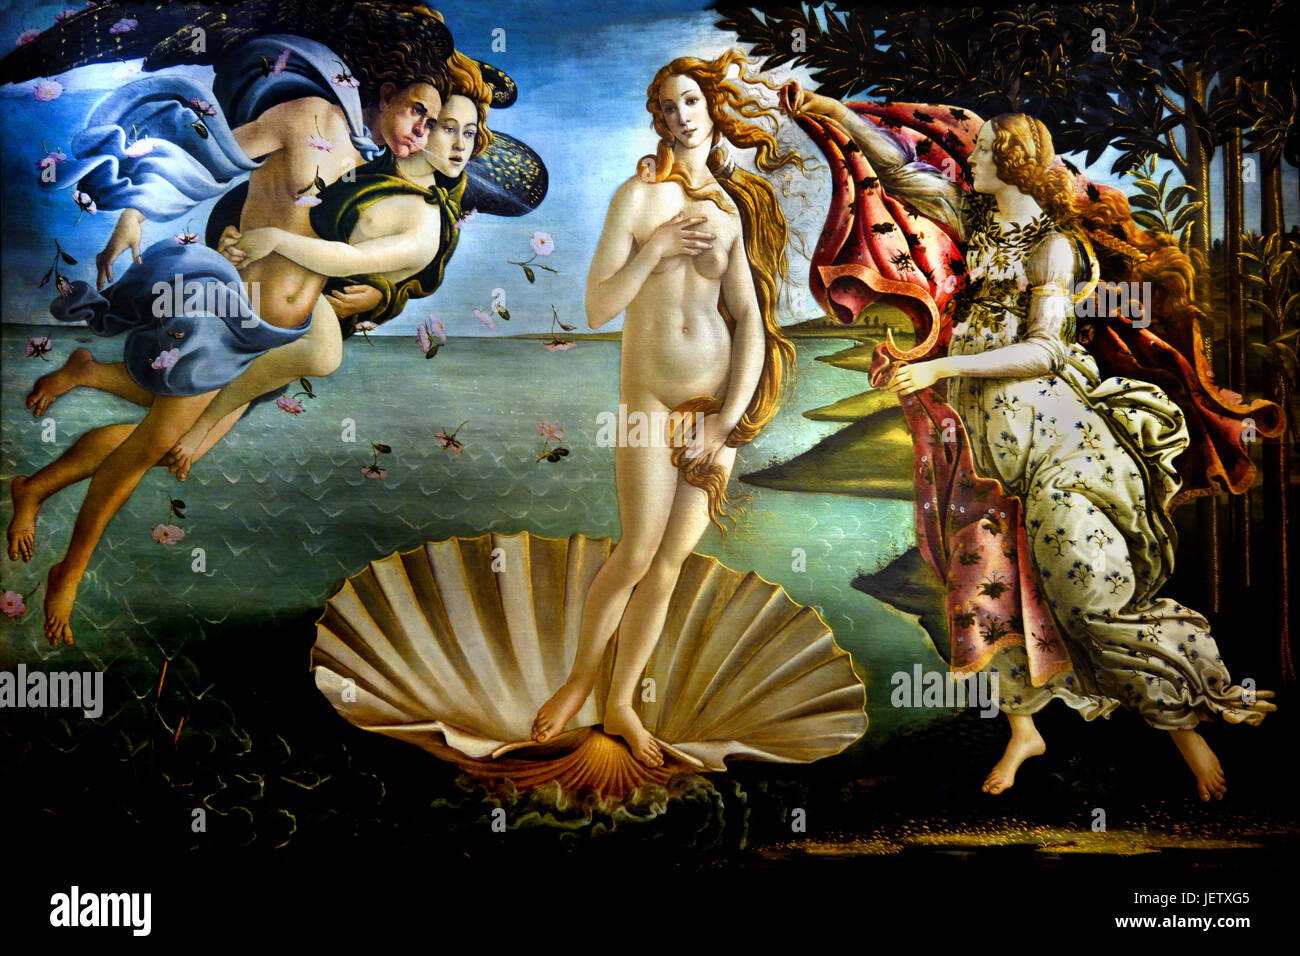 Der Birt Venus 1485 Sandro Botticelli (Alessandro di Mariano Filipepi) 1445-1510 Florenz italienische Maler Florentiner Schule Frührenaissance. Stockfoto